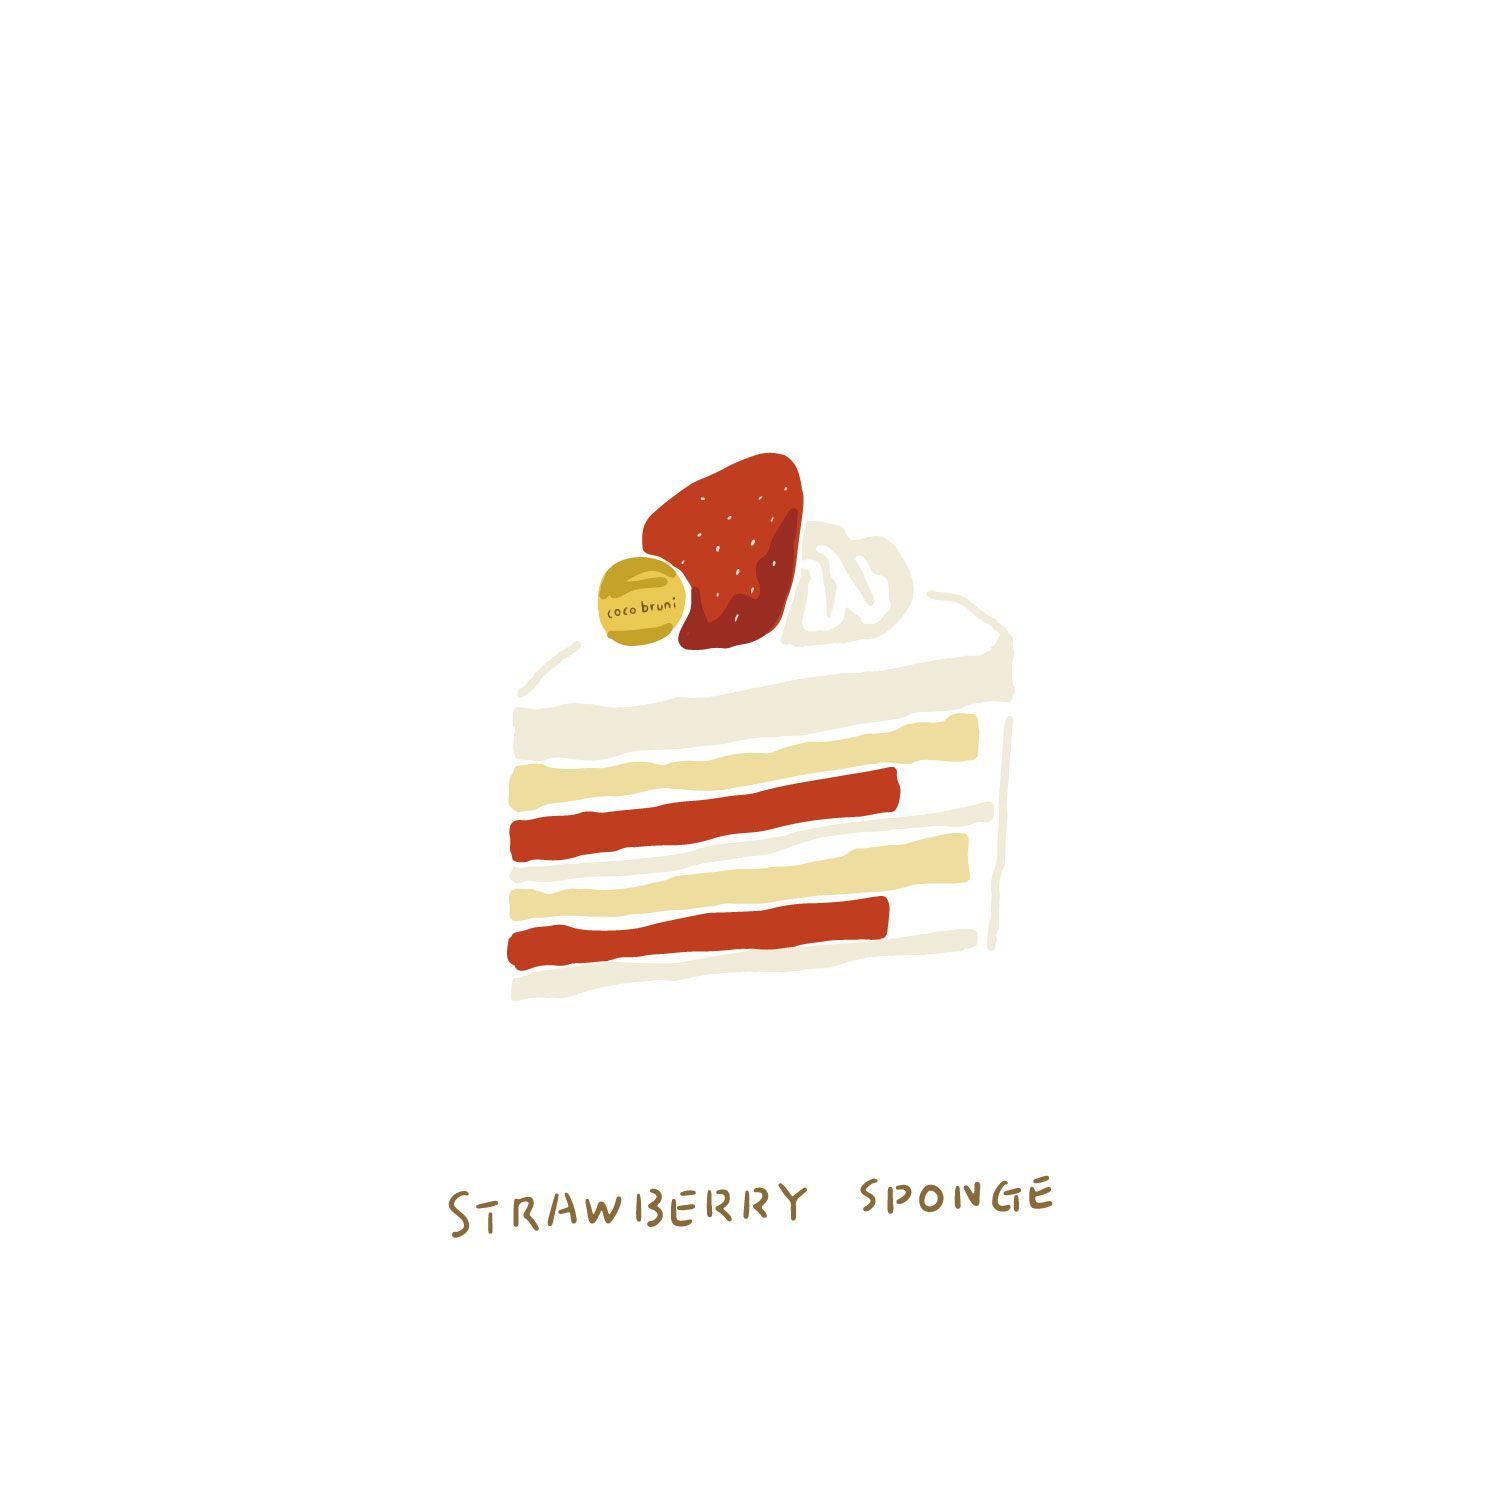 15 cake Illustration illustrators ideas